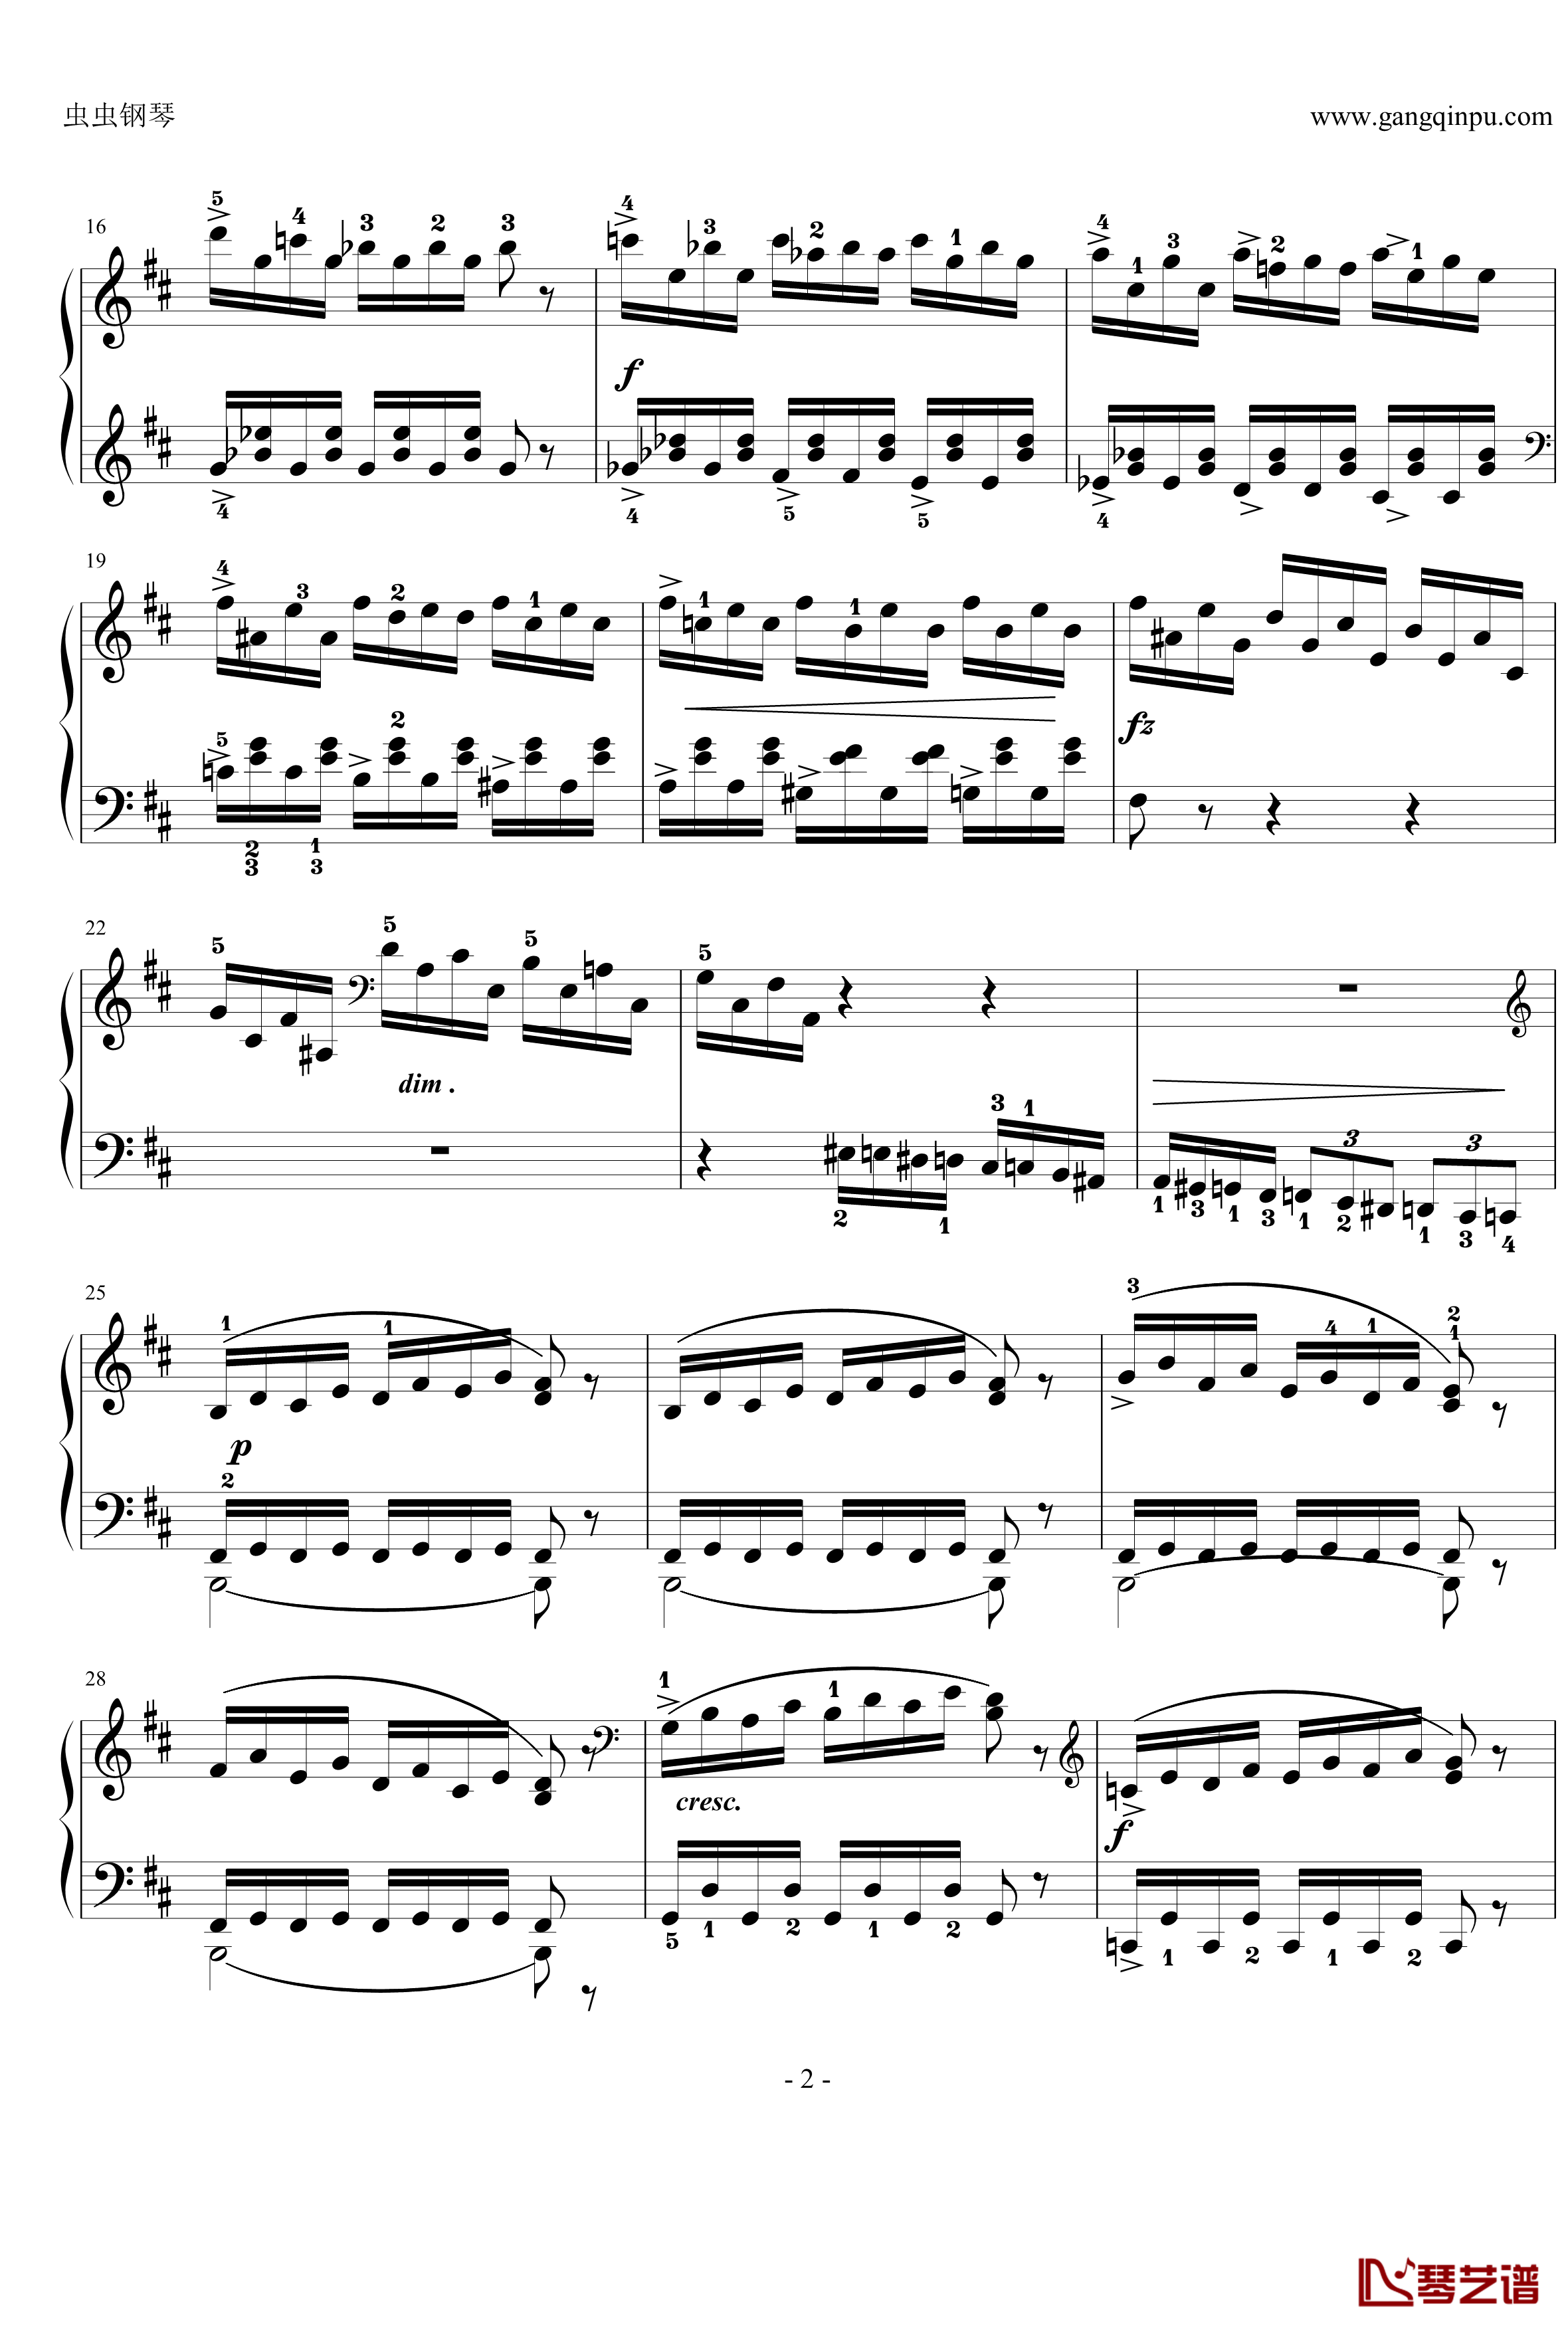 小溪钢琴谱-nyride-格里格2